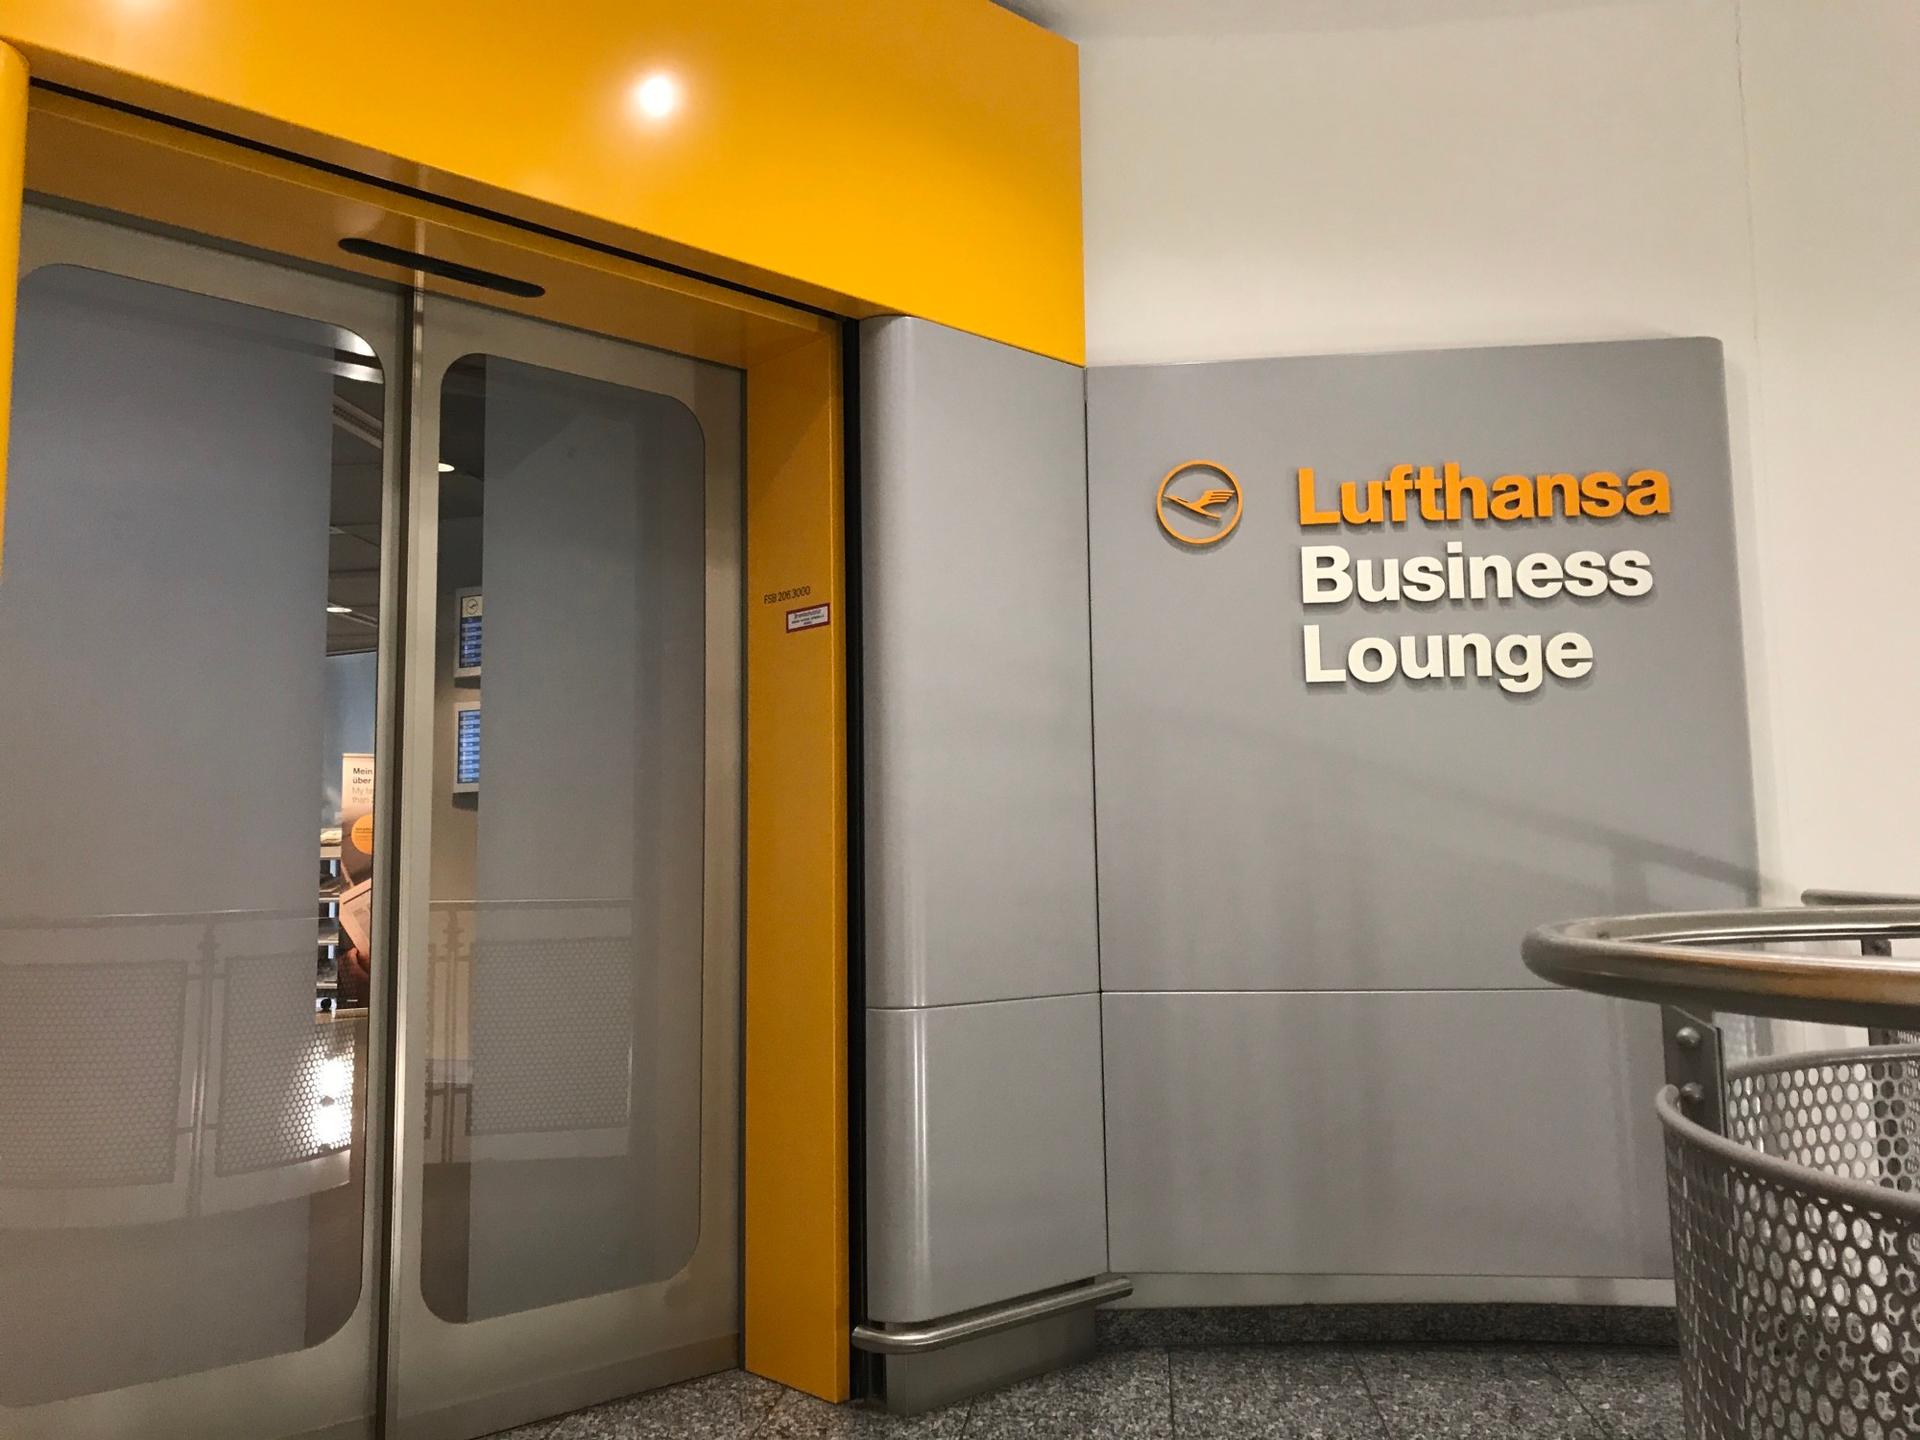 Lufthansa Business Lounge (Non-Schengen, Gates B44-B48) image 13 of 46